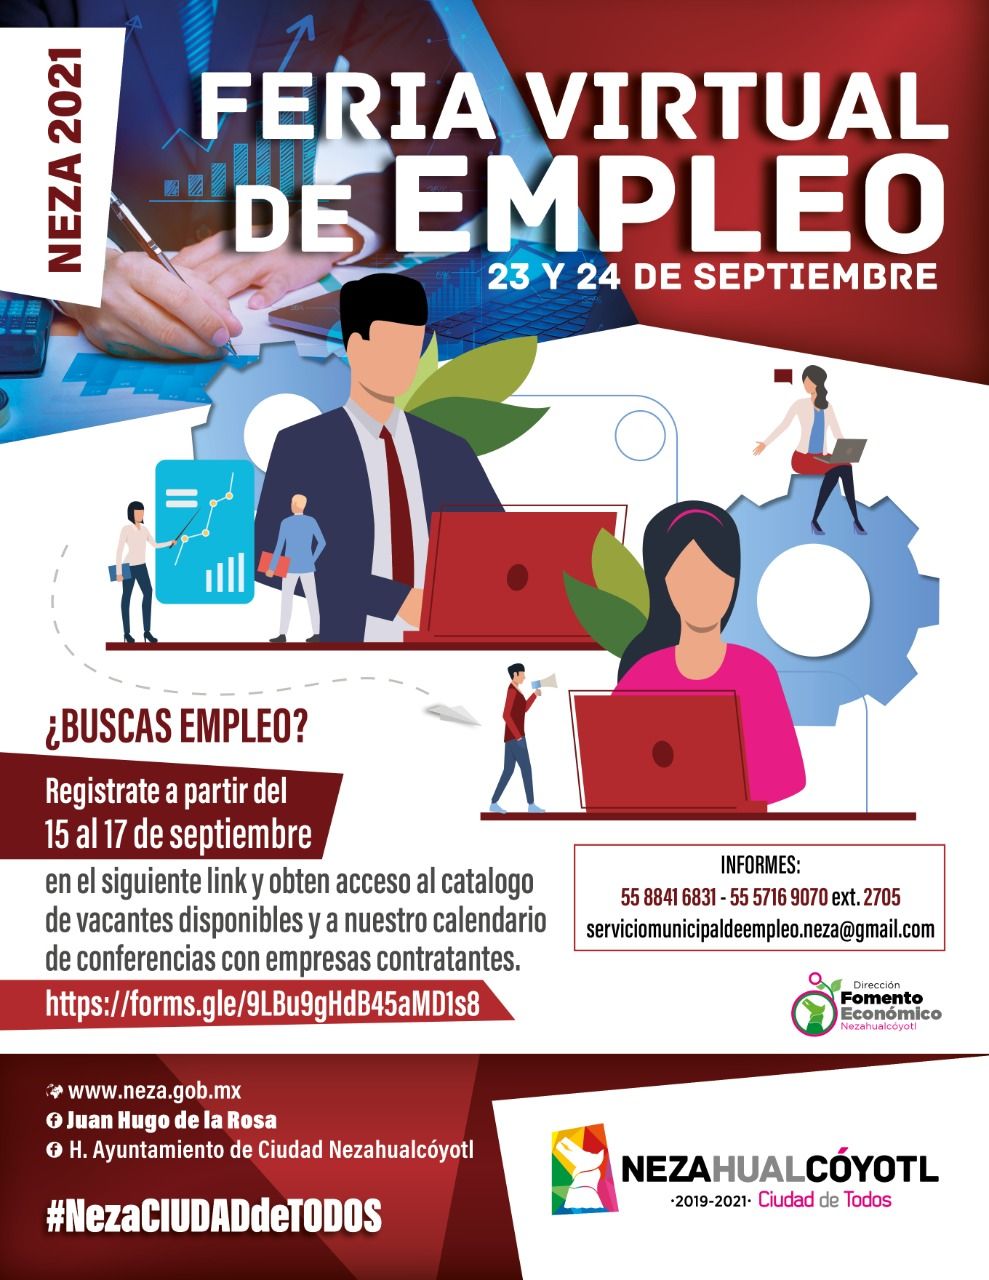 #Habra Feria Virtual del empleo Neza 2021 anuncia Juan Hugo de la Rosa